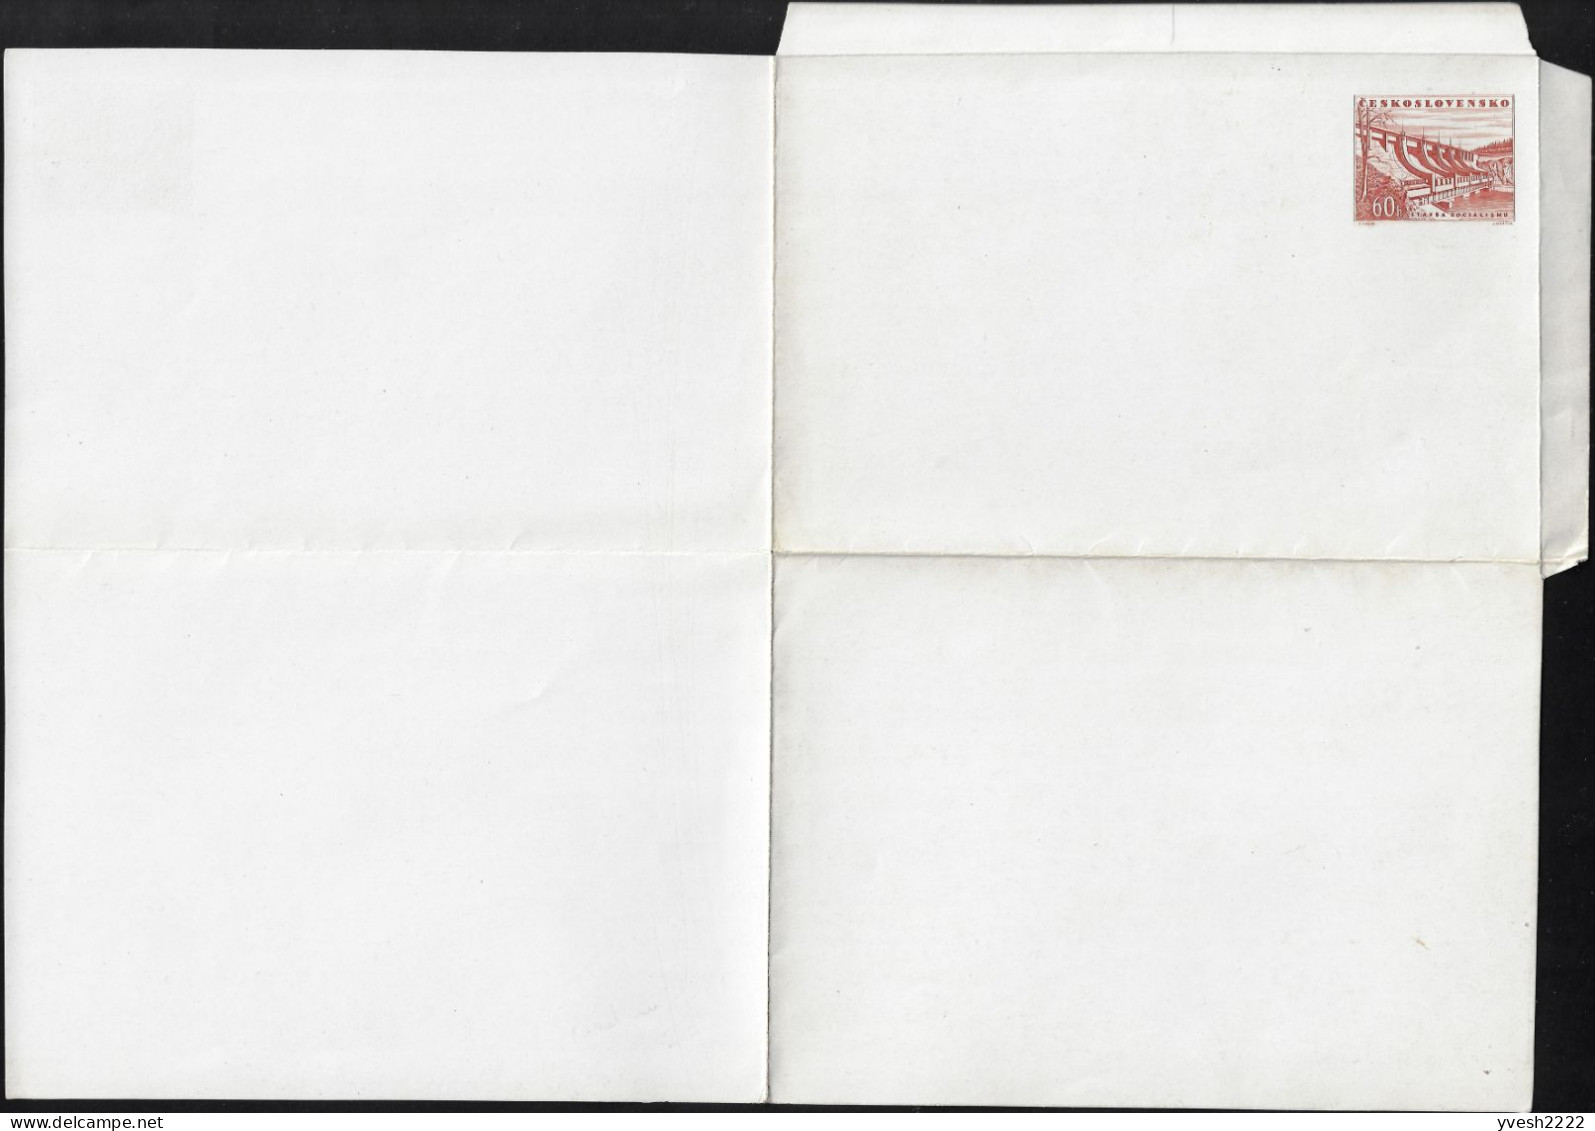 Tchécoslovaquie 1953 Michel F1b ??? Carte-lettre Sans La Moindre Inscription, Papier Craie. Barrage Communiste - Wasser